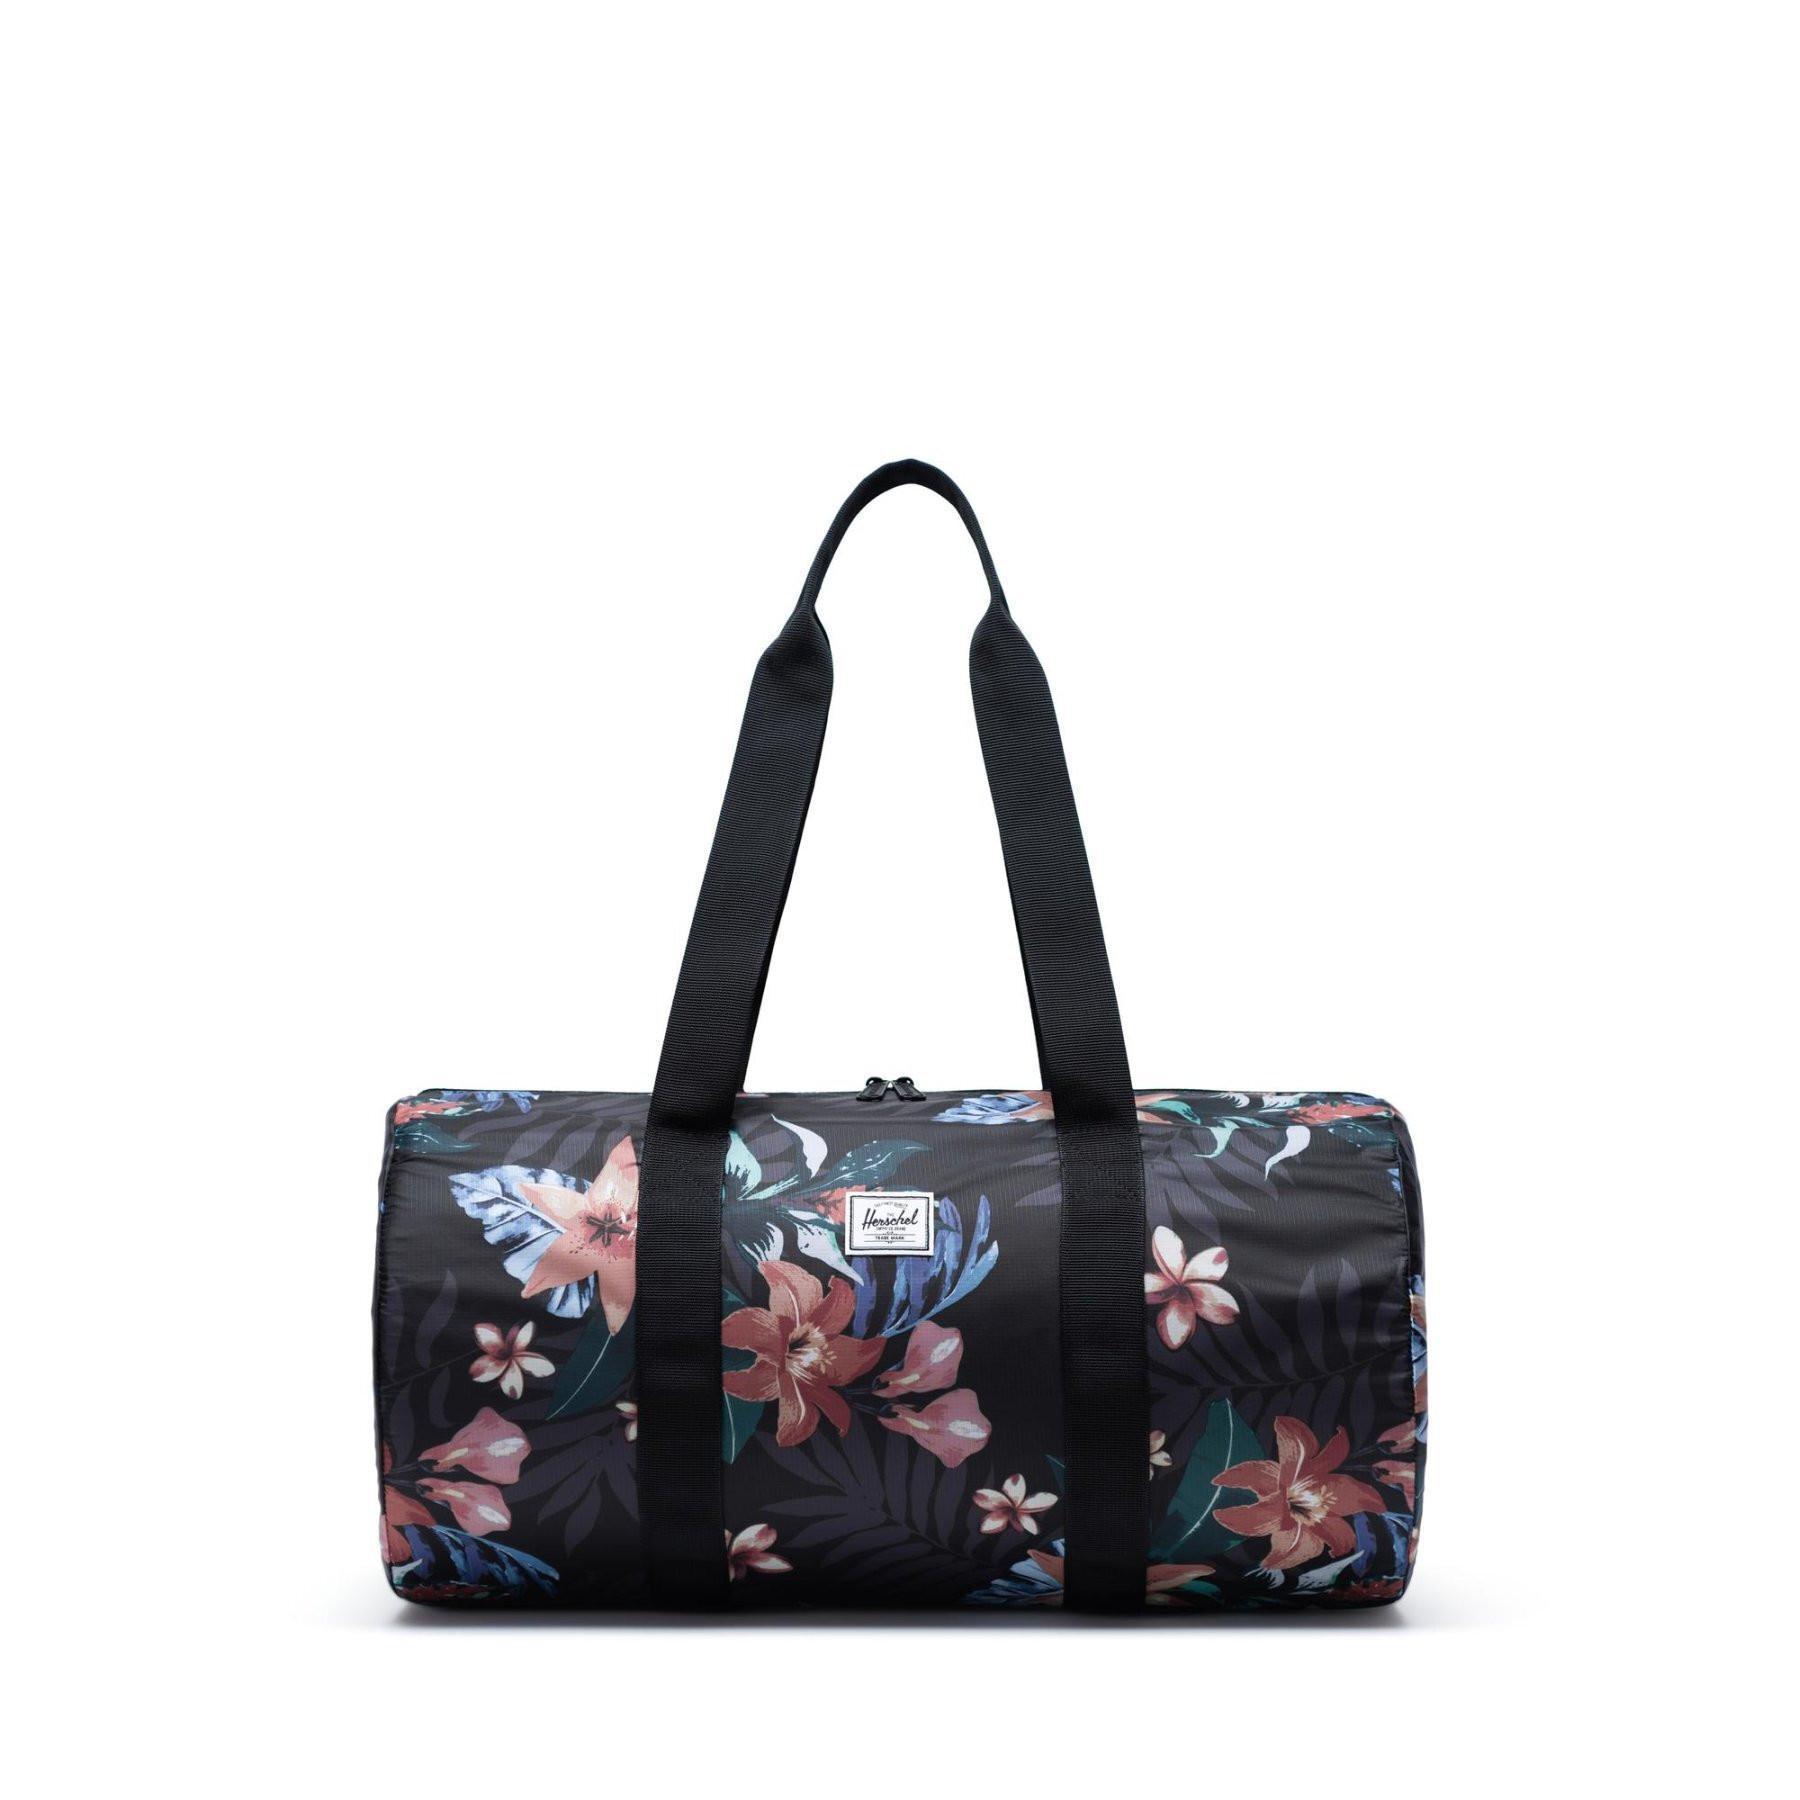 Bolsa de viagem Herschel packable duffle summer floral black